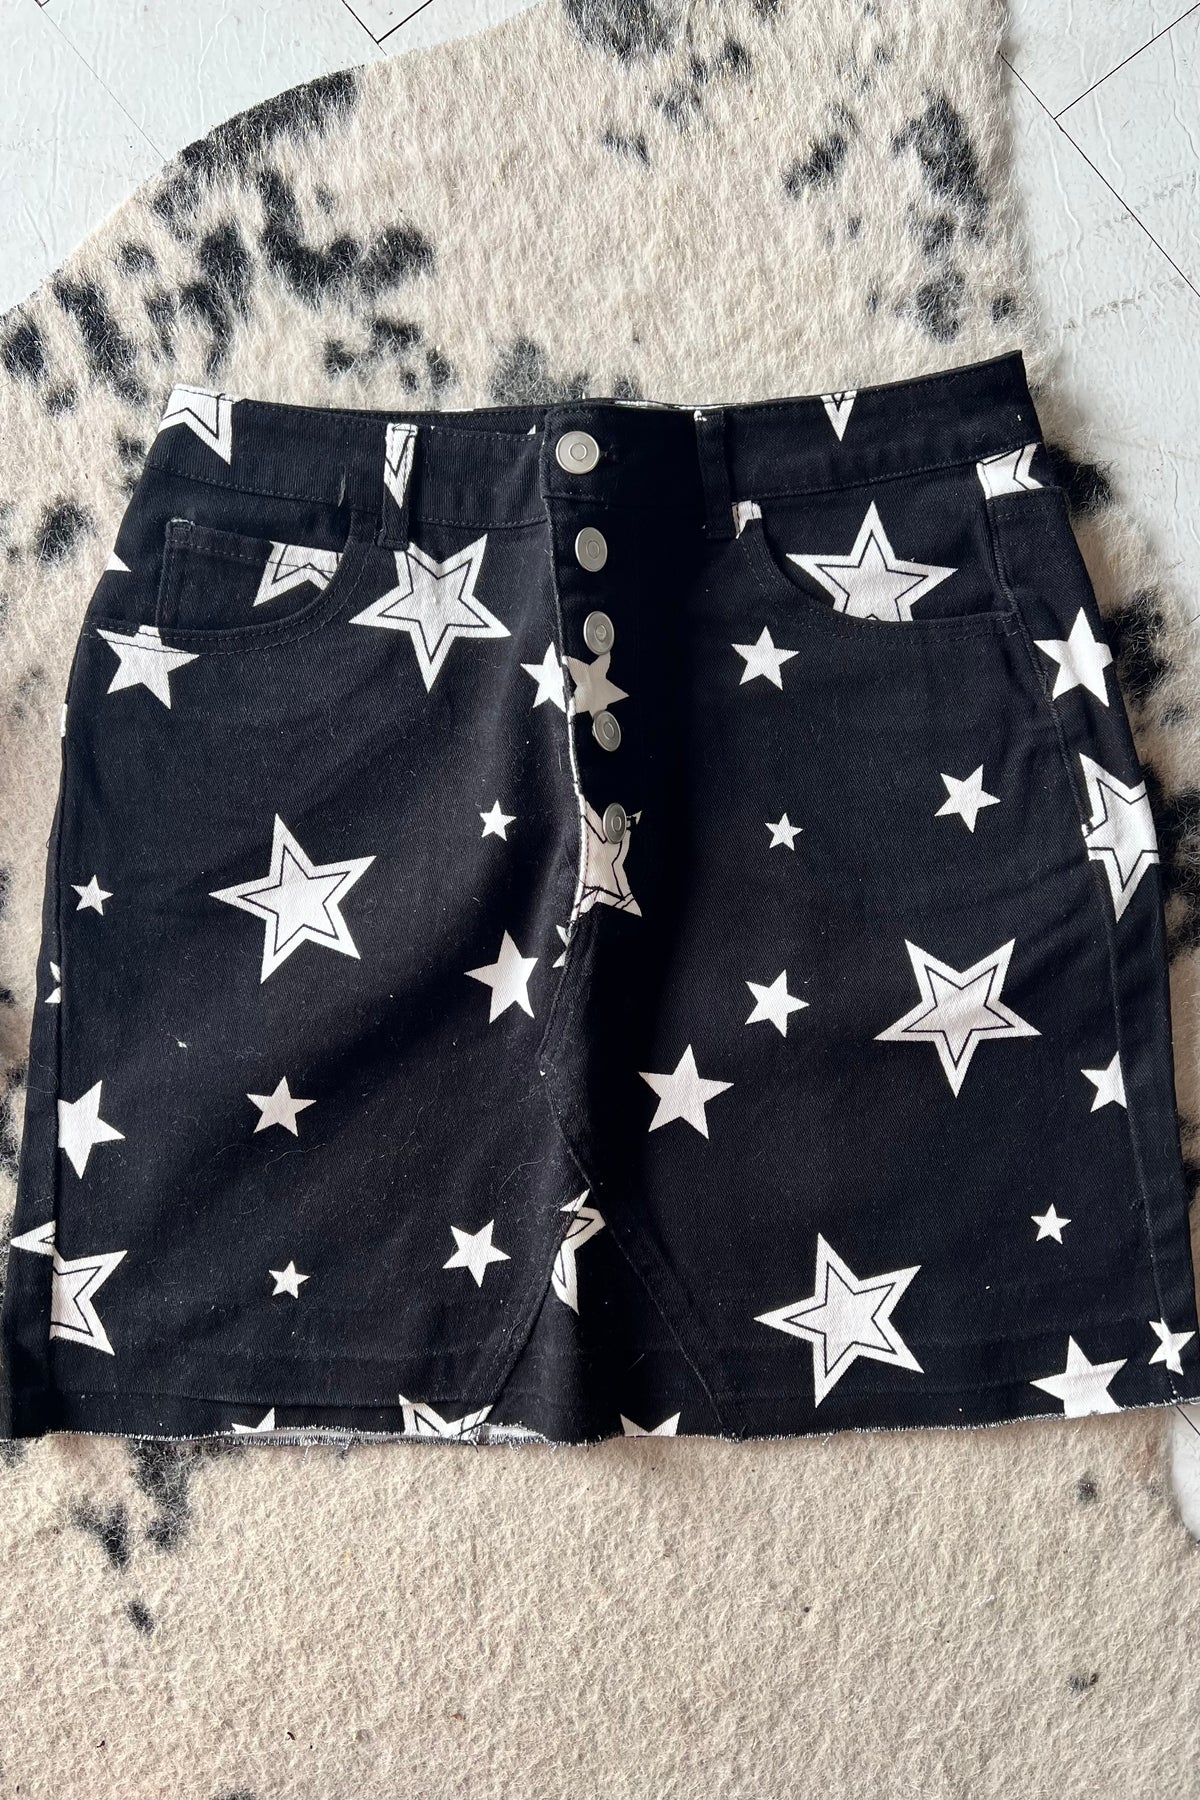 Black & White Star Skirt